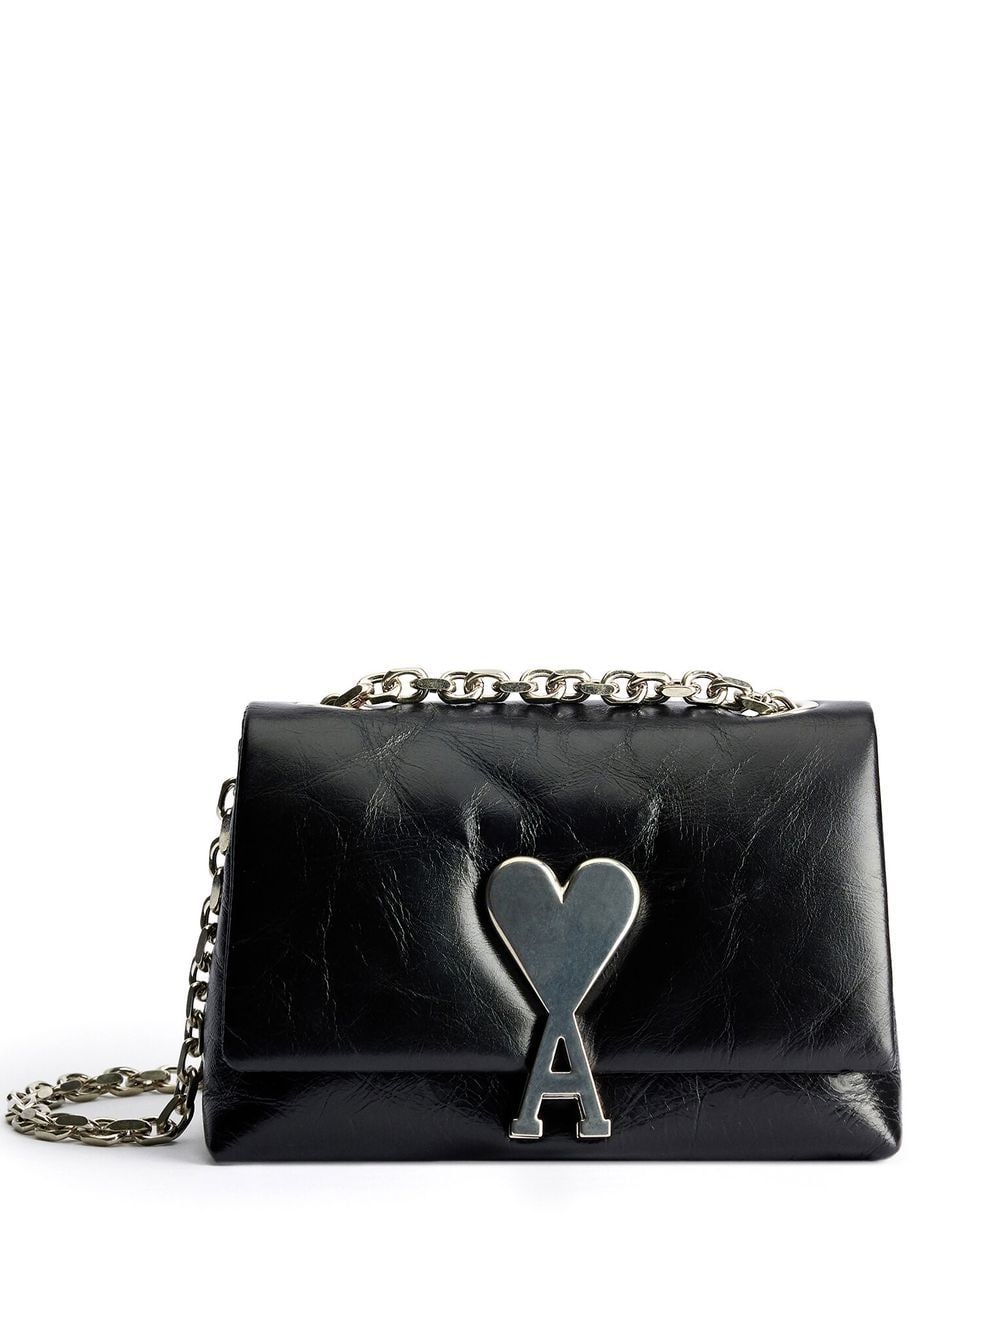 AMI Paris mini Voulez-Vous leather shoulder bag - Black von AMI Paris